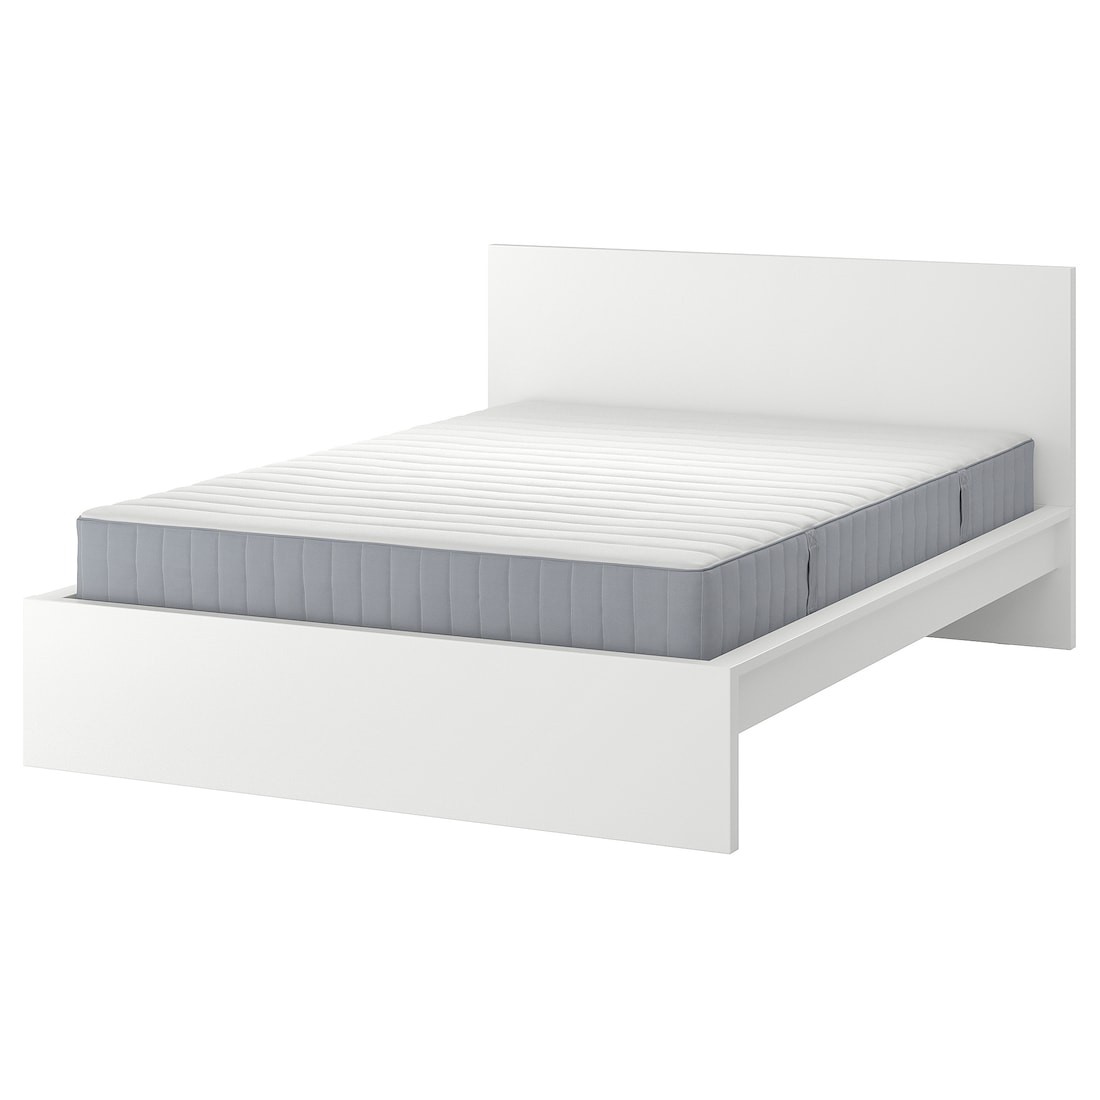 MALM Кровать с матрасом, белый / Valevåg средней жесткости, 160x200 см